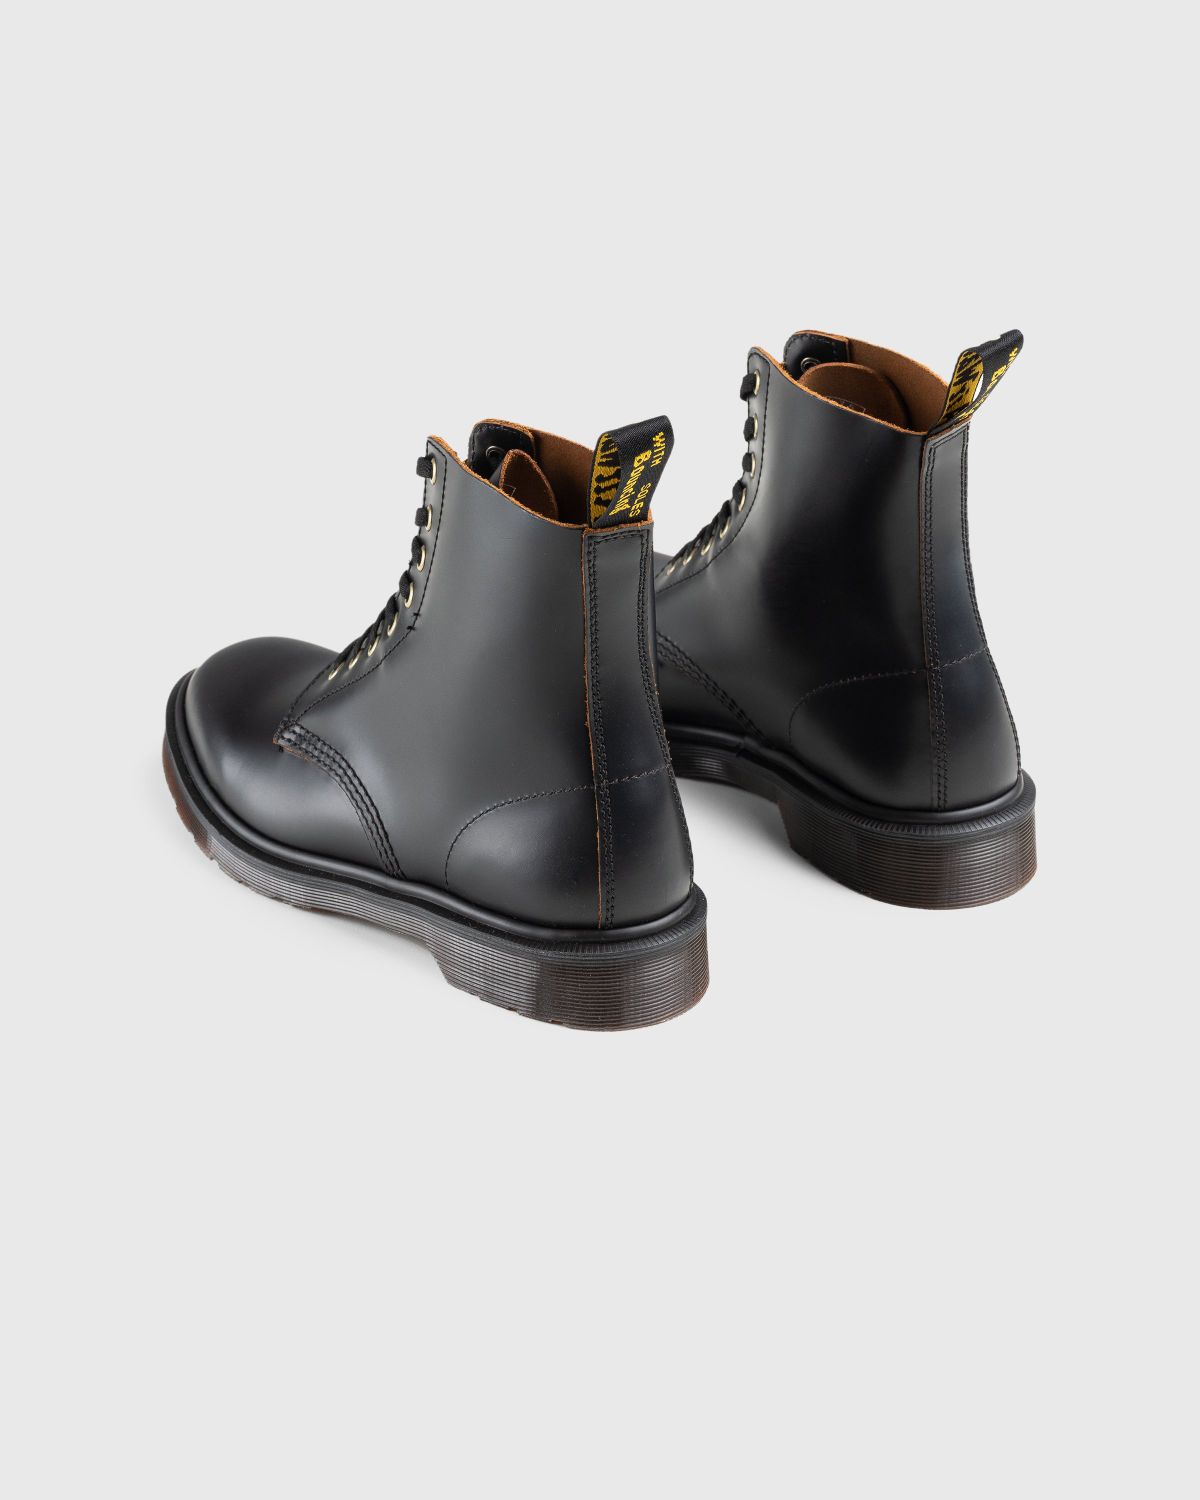 Dr. Martens – 1460 Vintage Smooth Black - Laced Up Boots - Black - Image 4